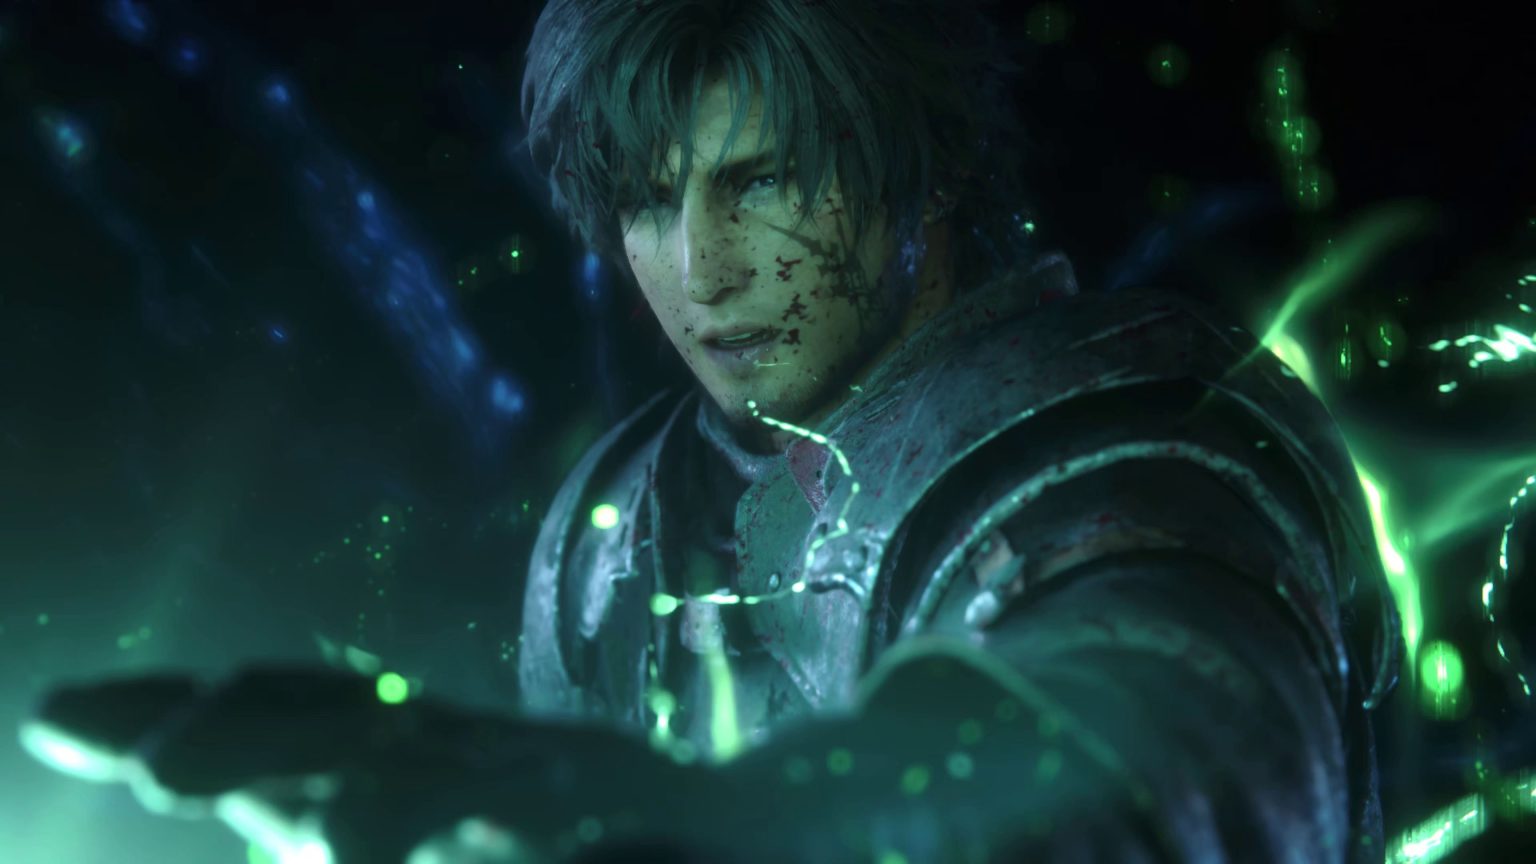 Les joueurs de Final Fantasy 16 se plaignent de la surchauffe des consoles pendant les sessions de jeu